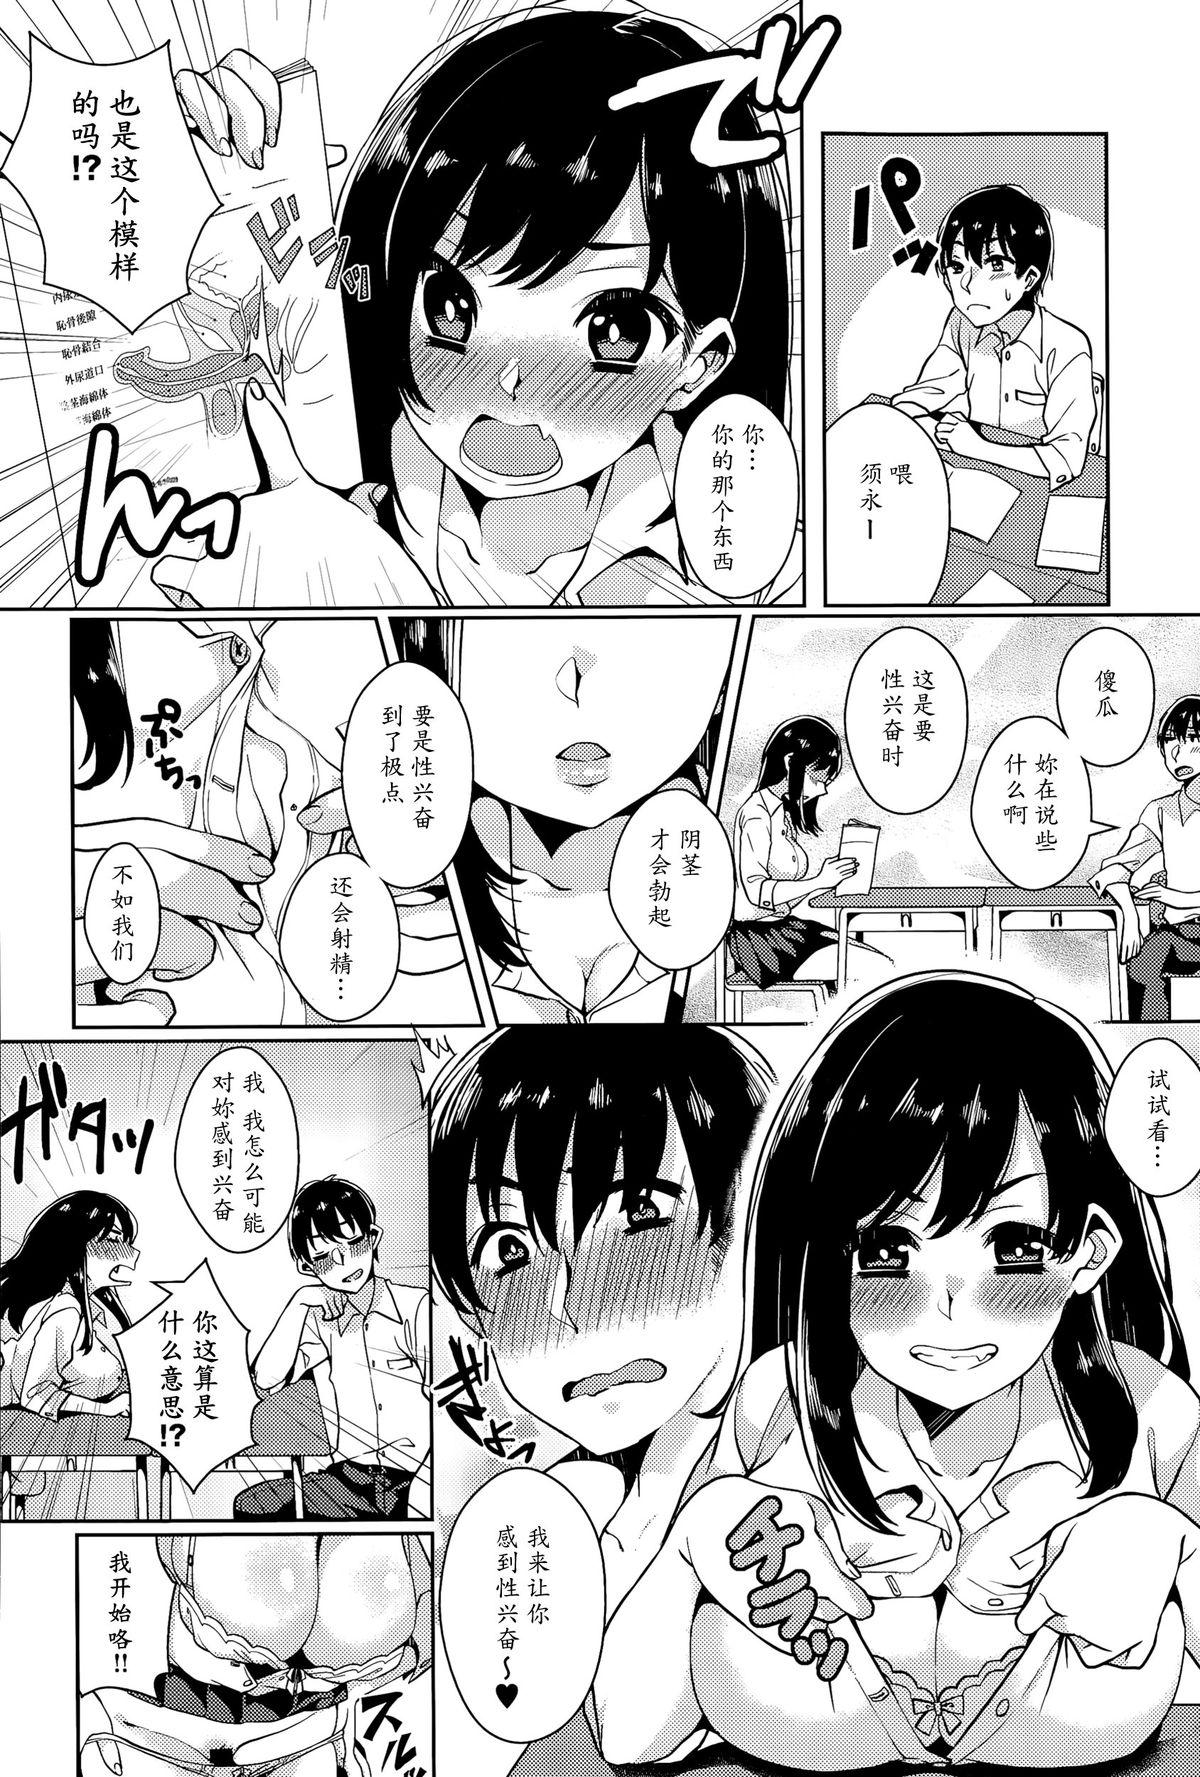 De Quatro Himitsu no Jitsugi Enshuu Teenporn - Page 4